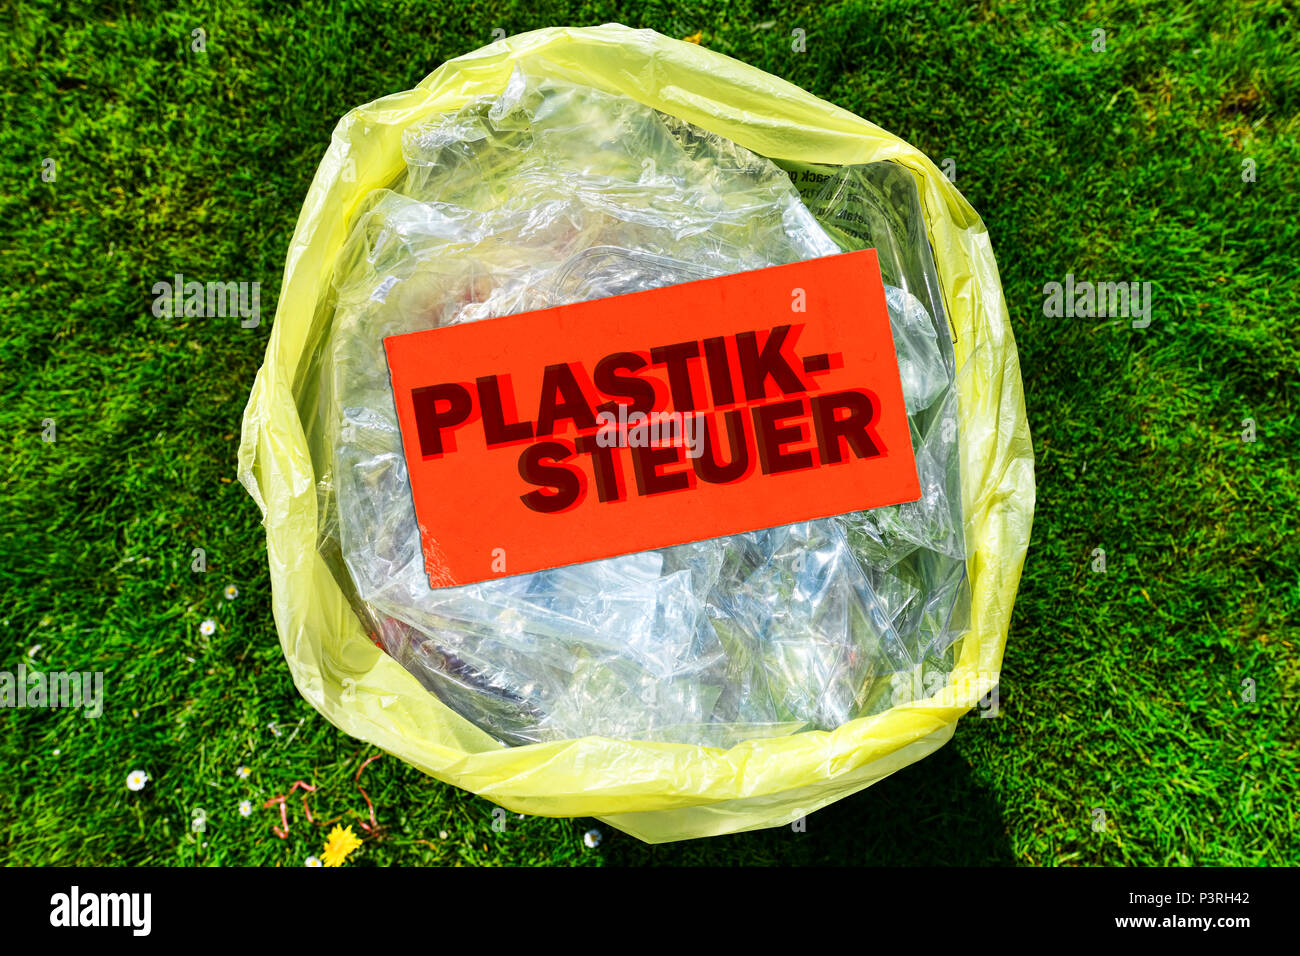 Plastic packaging waste and price tag labeled plastic control, Verpackungsmüll aus Kunststoff und Preisschild mit der Aufschrift Plastiksteuer Stock Photo